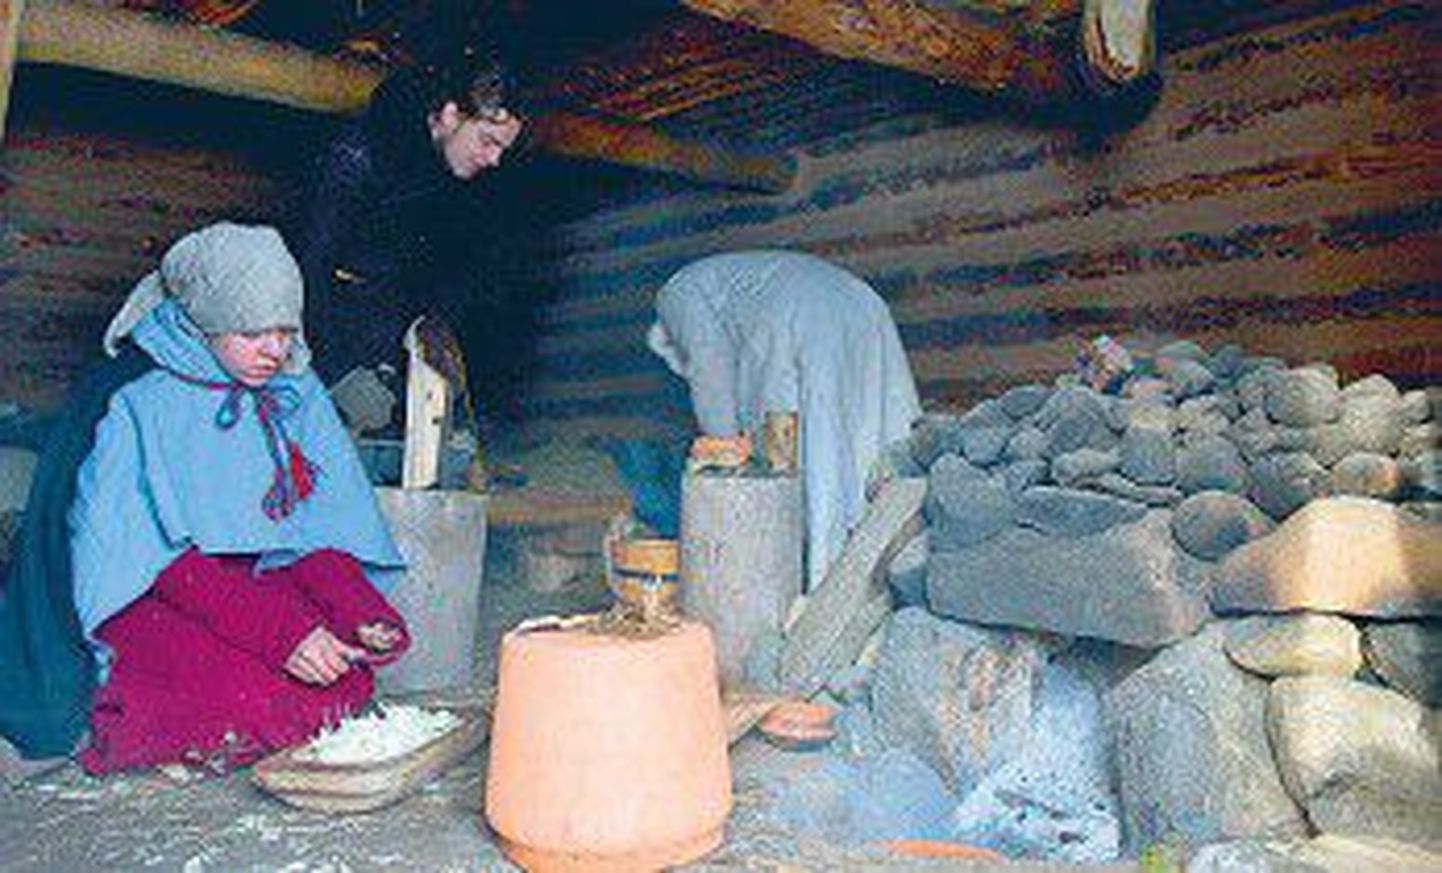 Пятеро студентов-археологов из Тартуского университета целую неделю прожили в Рыуге в реконструированном курном доме времен викингов.